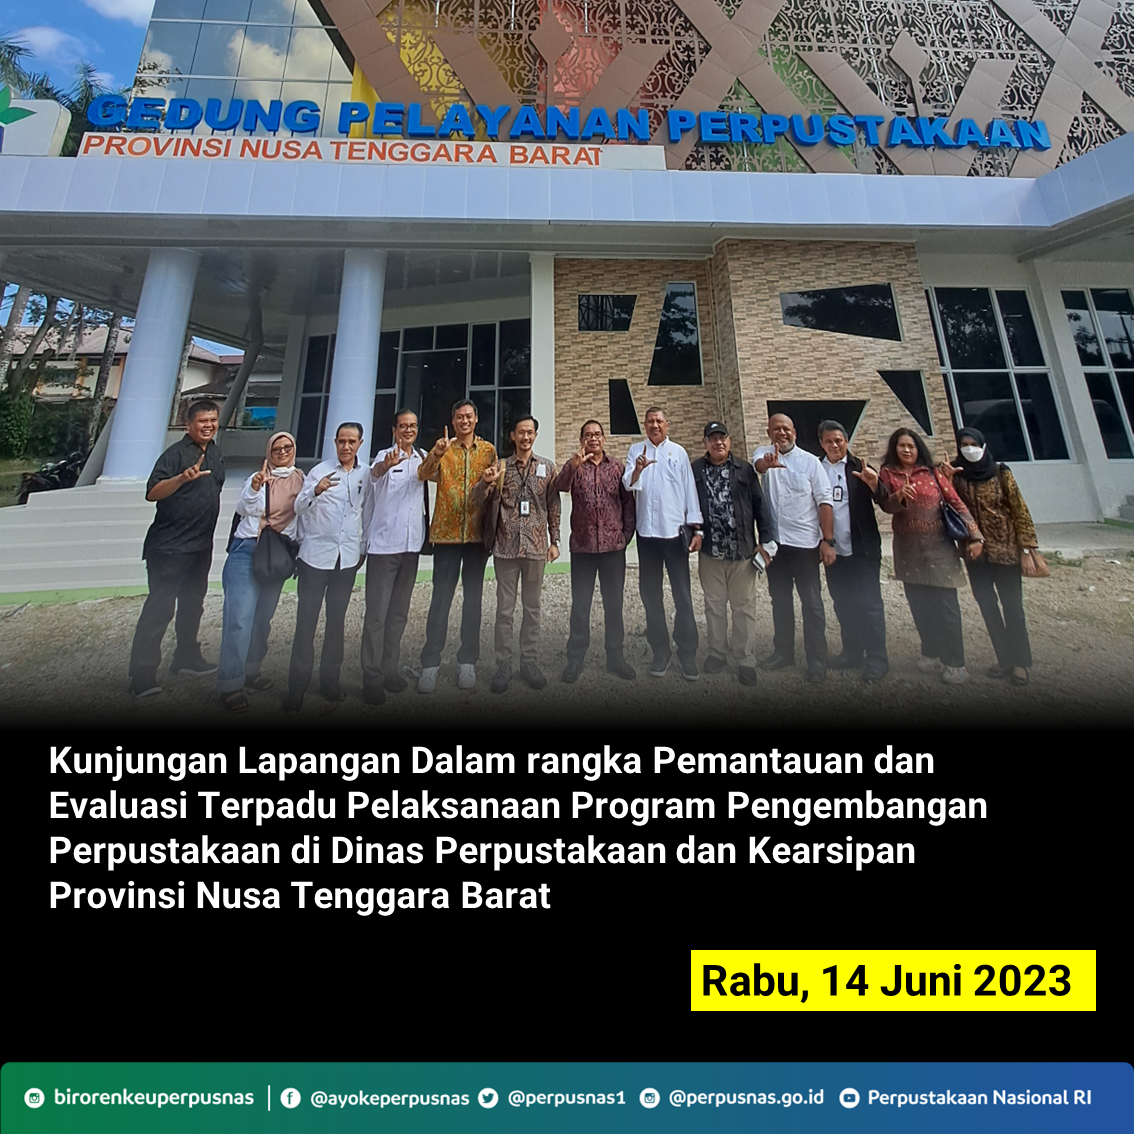 Kunjungan Lapangan Dalam Rangka Pemantauan dan Evaluasi Terpadu Pelaksanaan Program Pengembangan Perpustakaan di Dinas Perpustakaan dan Kearsipan Provinsi Nusa Tenggara Barat